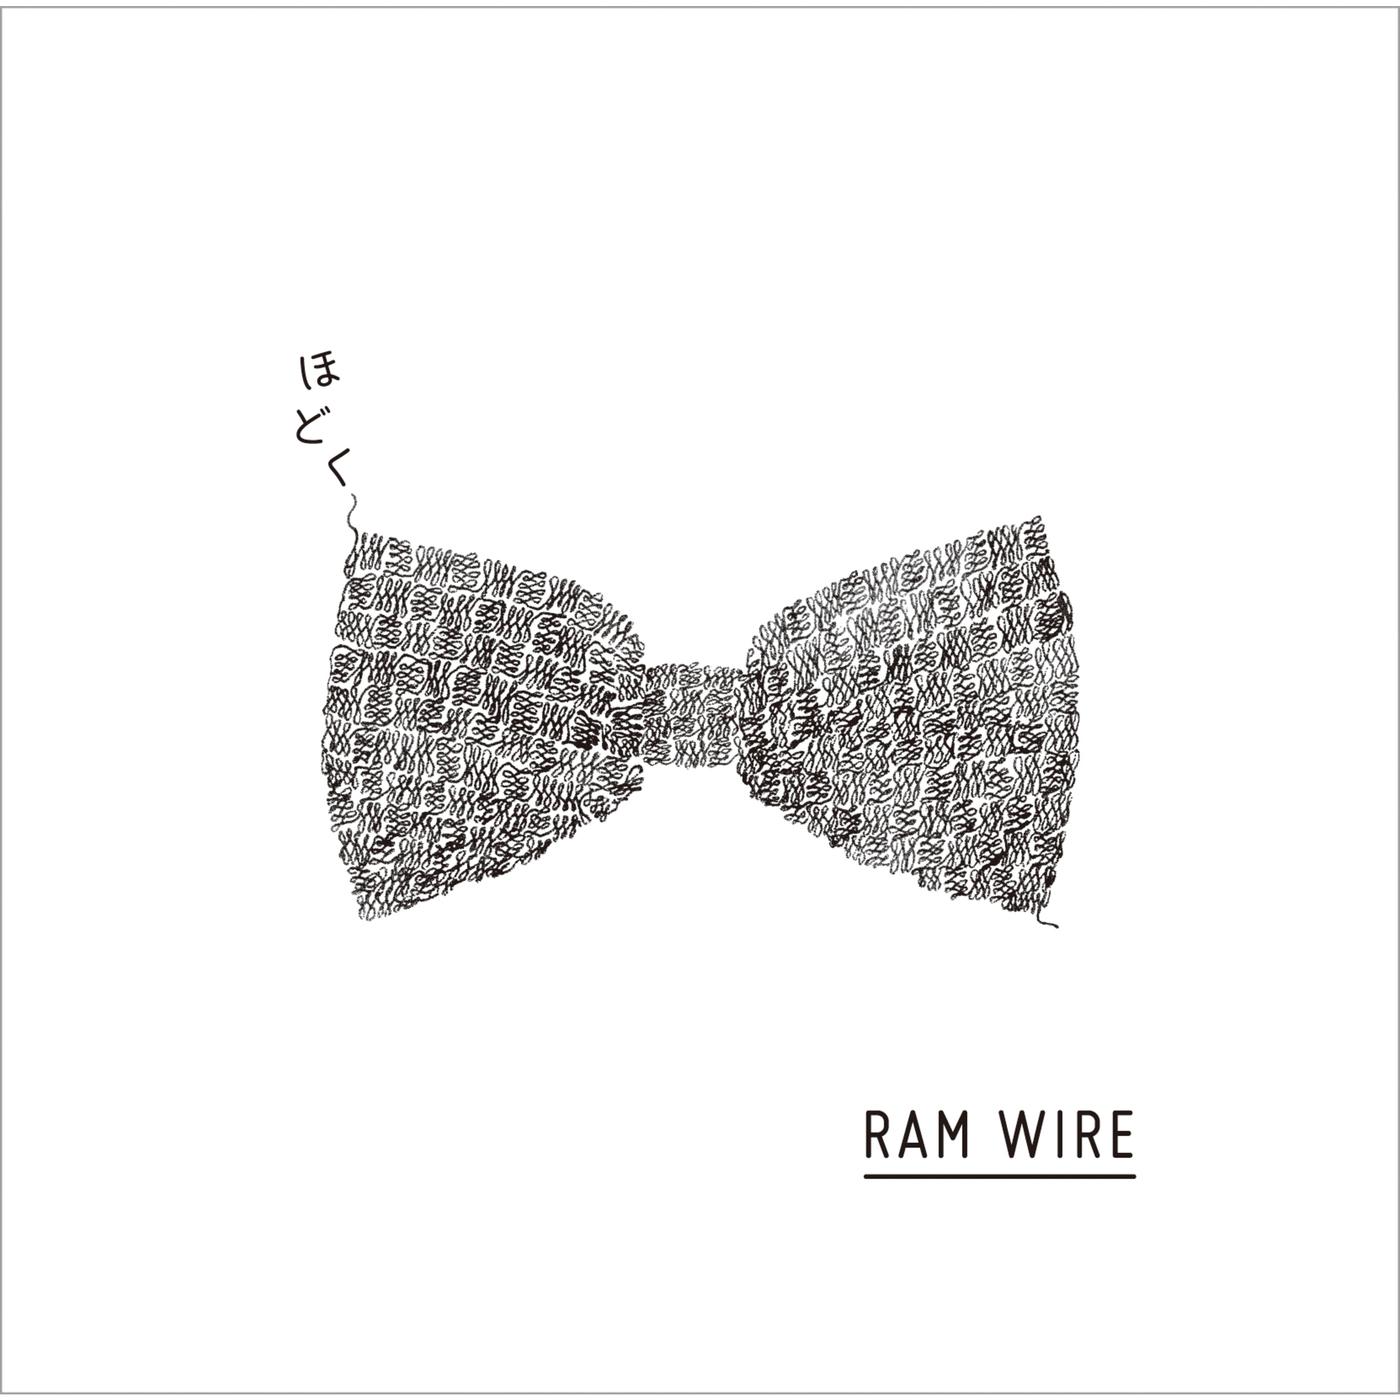 歩み歌词 歌手RAM WIRE-专辑ほどく-单曲《歩み》LRC歌词下载